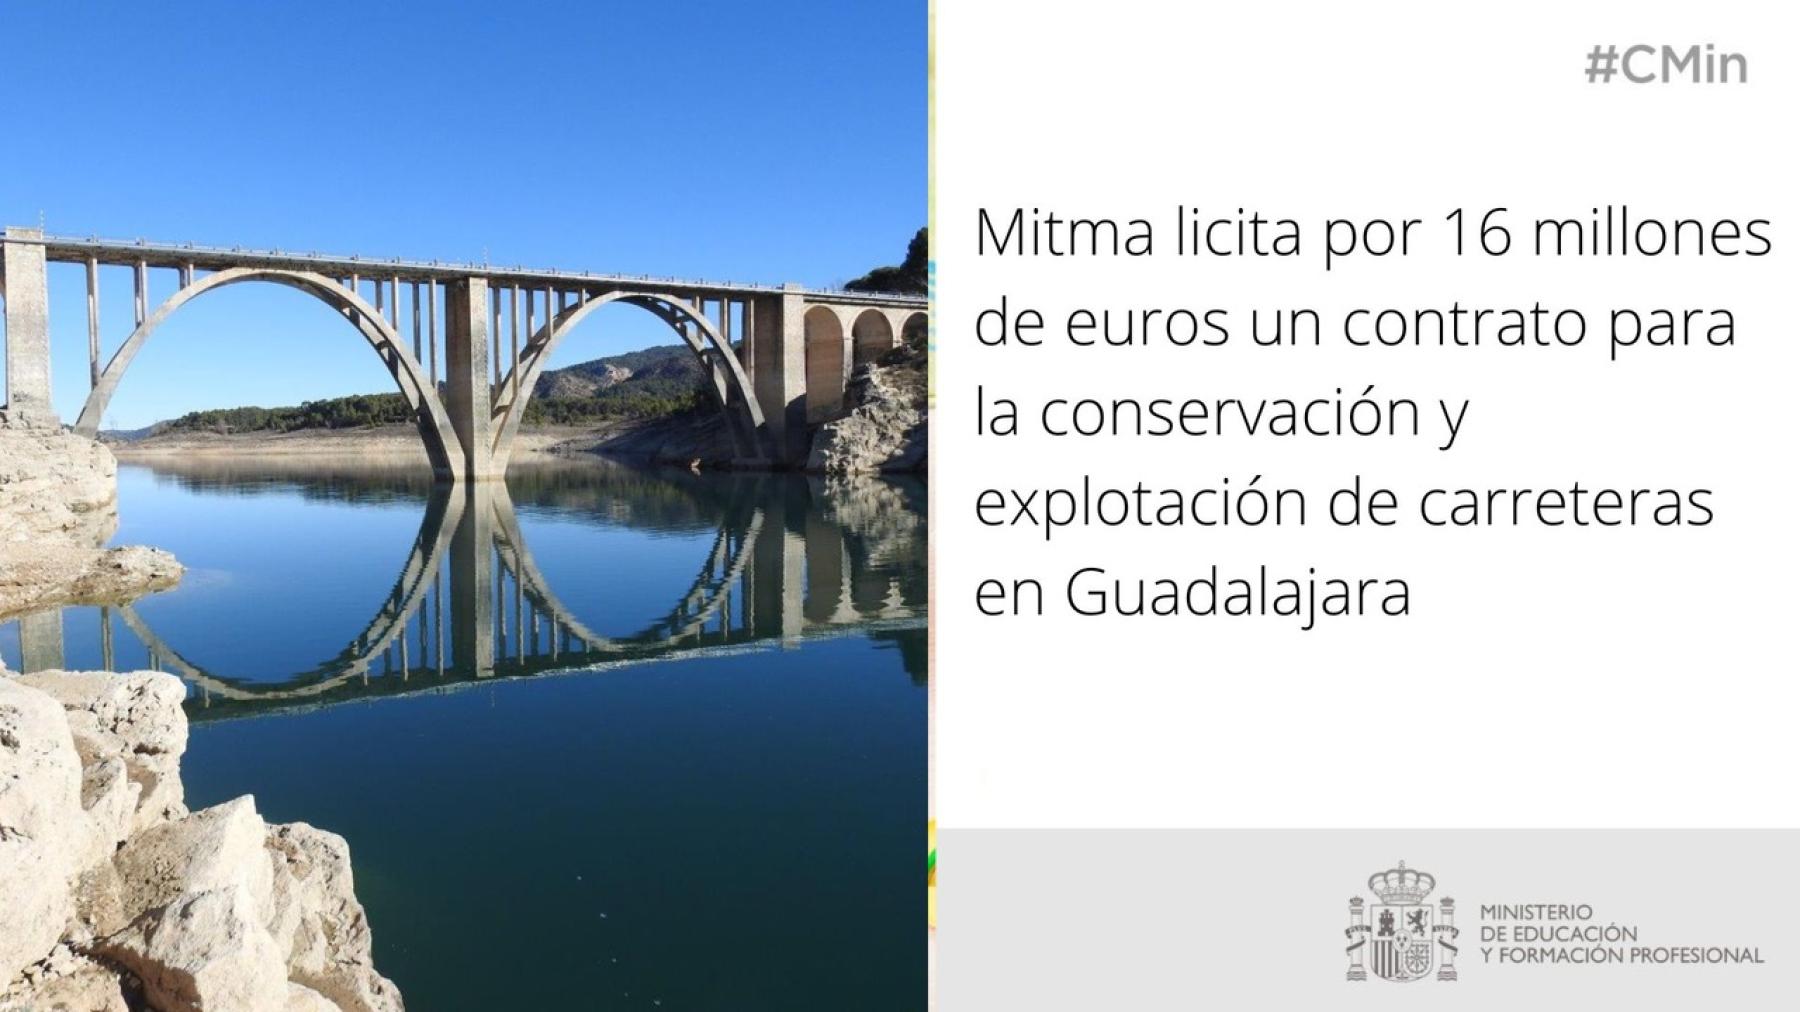 Mitma licita por 16 millones de euros un contrato para la conservación y explotación de carreteras en Guadalajara